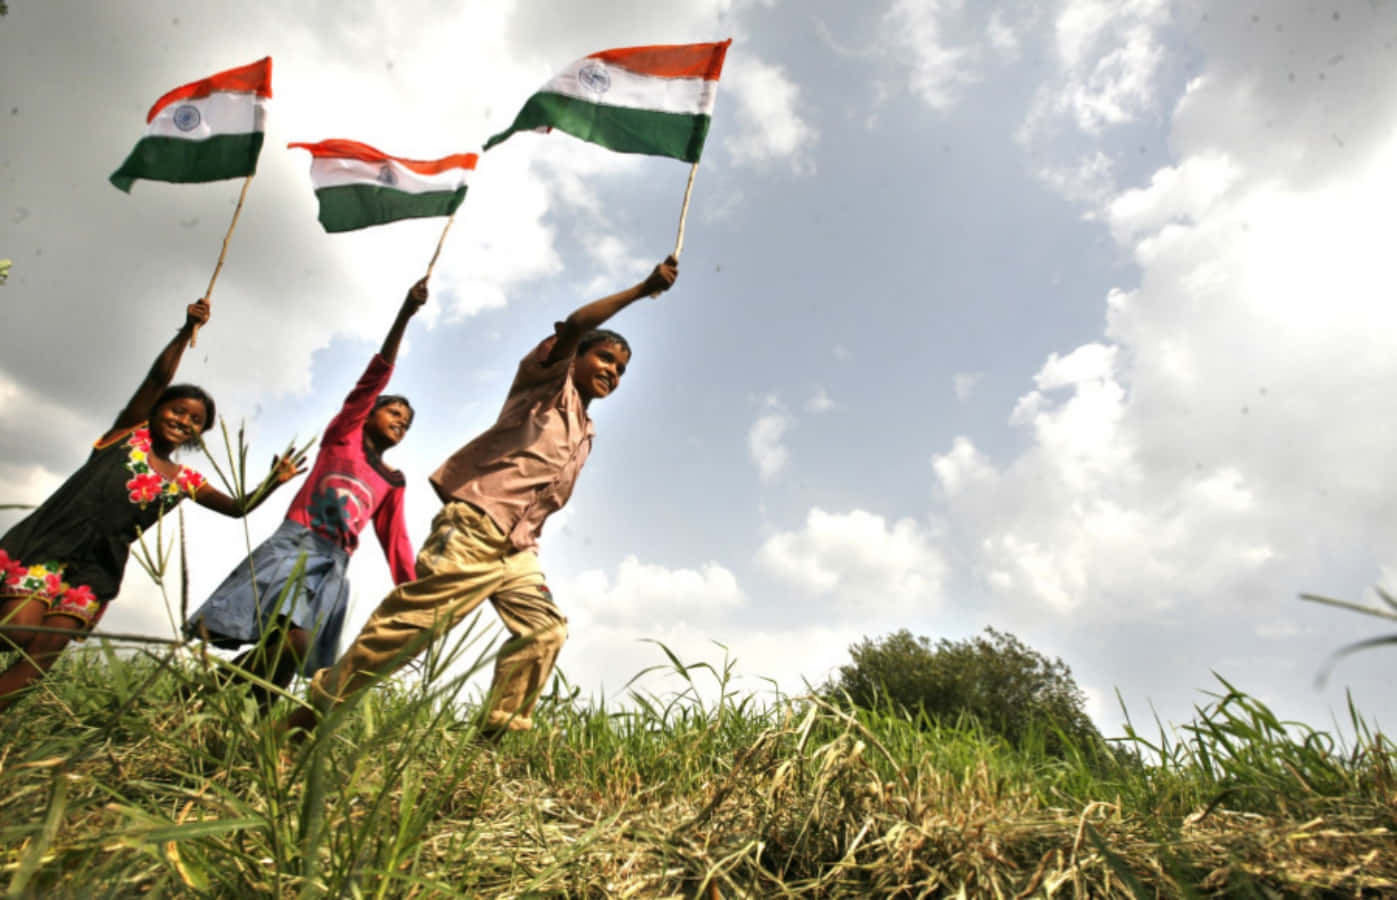 Giornatadell'indipendenza Dell'india Immagine Per Bambini Con La Bandiera Indiana.